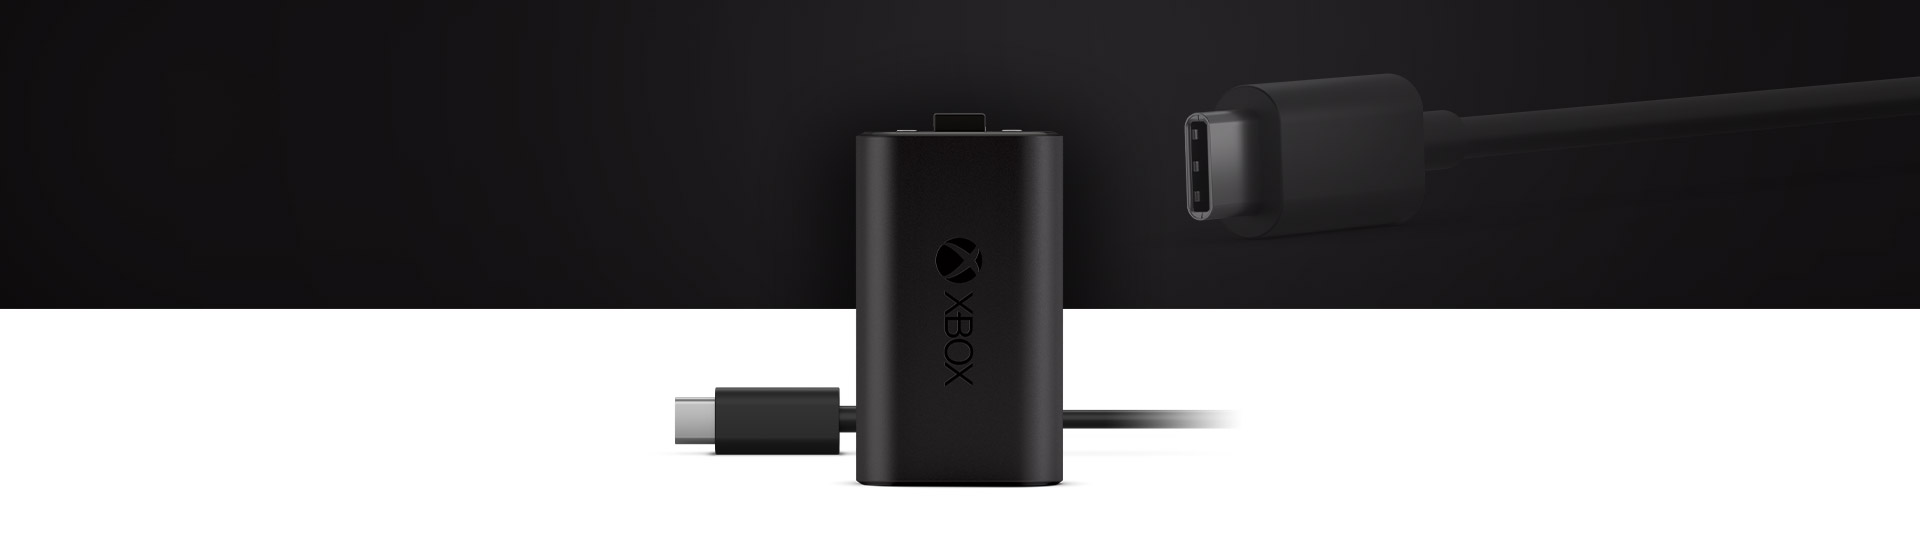 Xbox oplaadbare batterij + USB-C®-kabel met een close-up van USB-C®-kabel